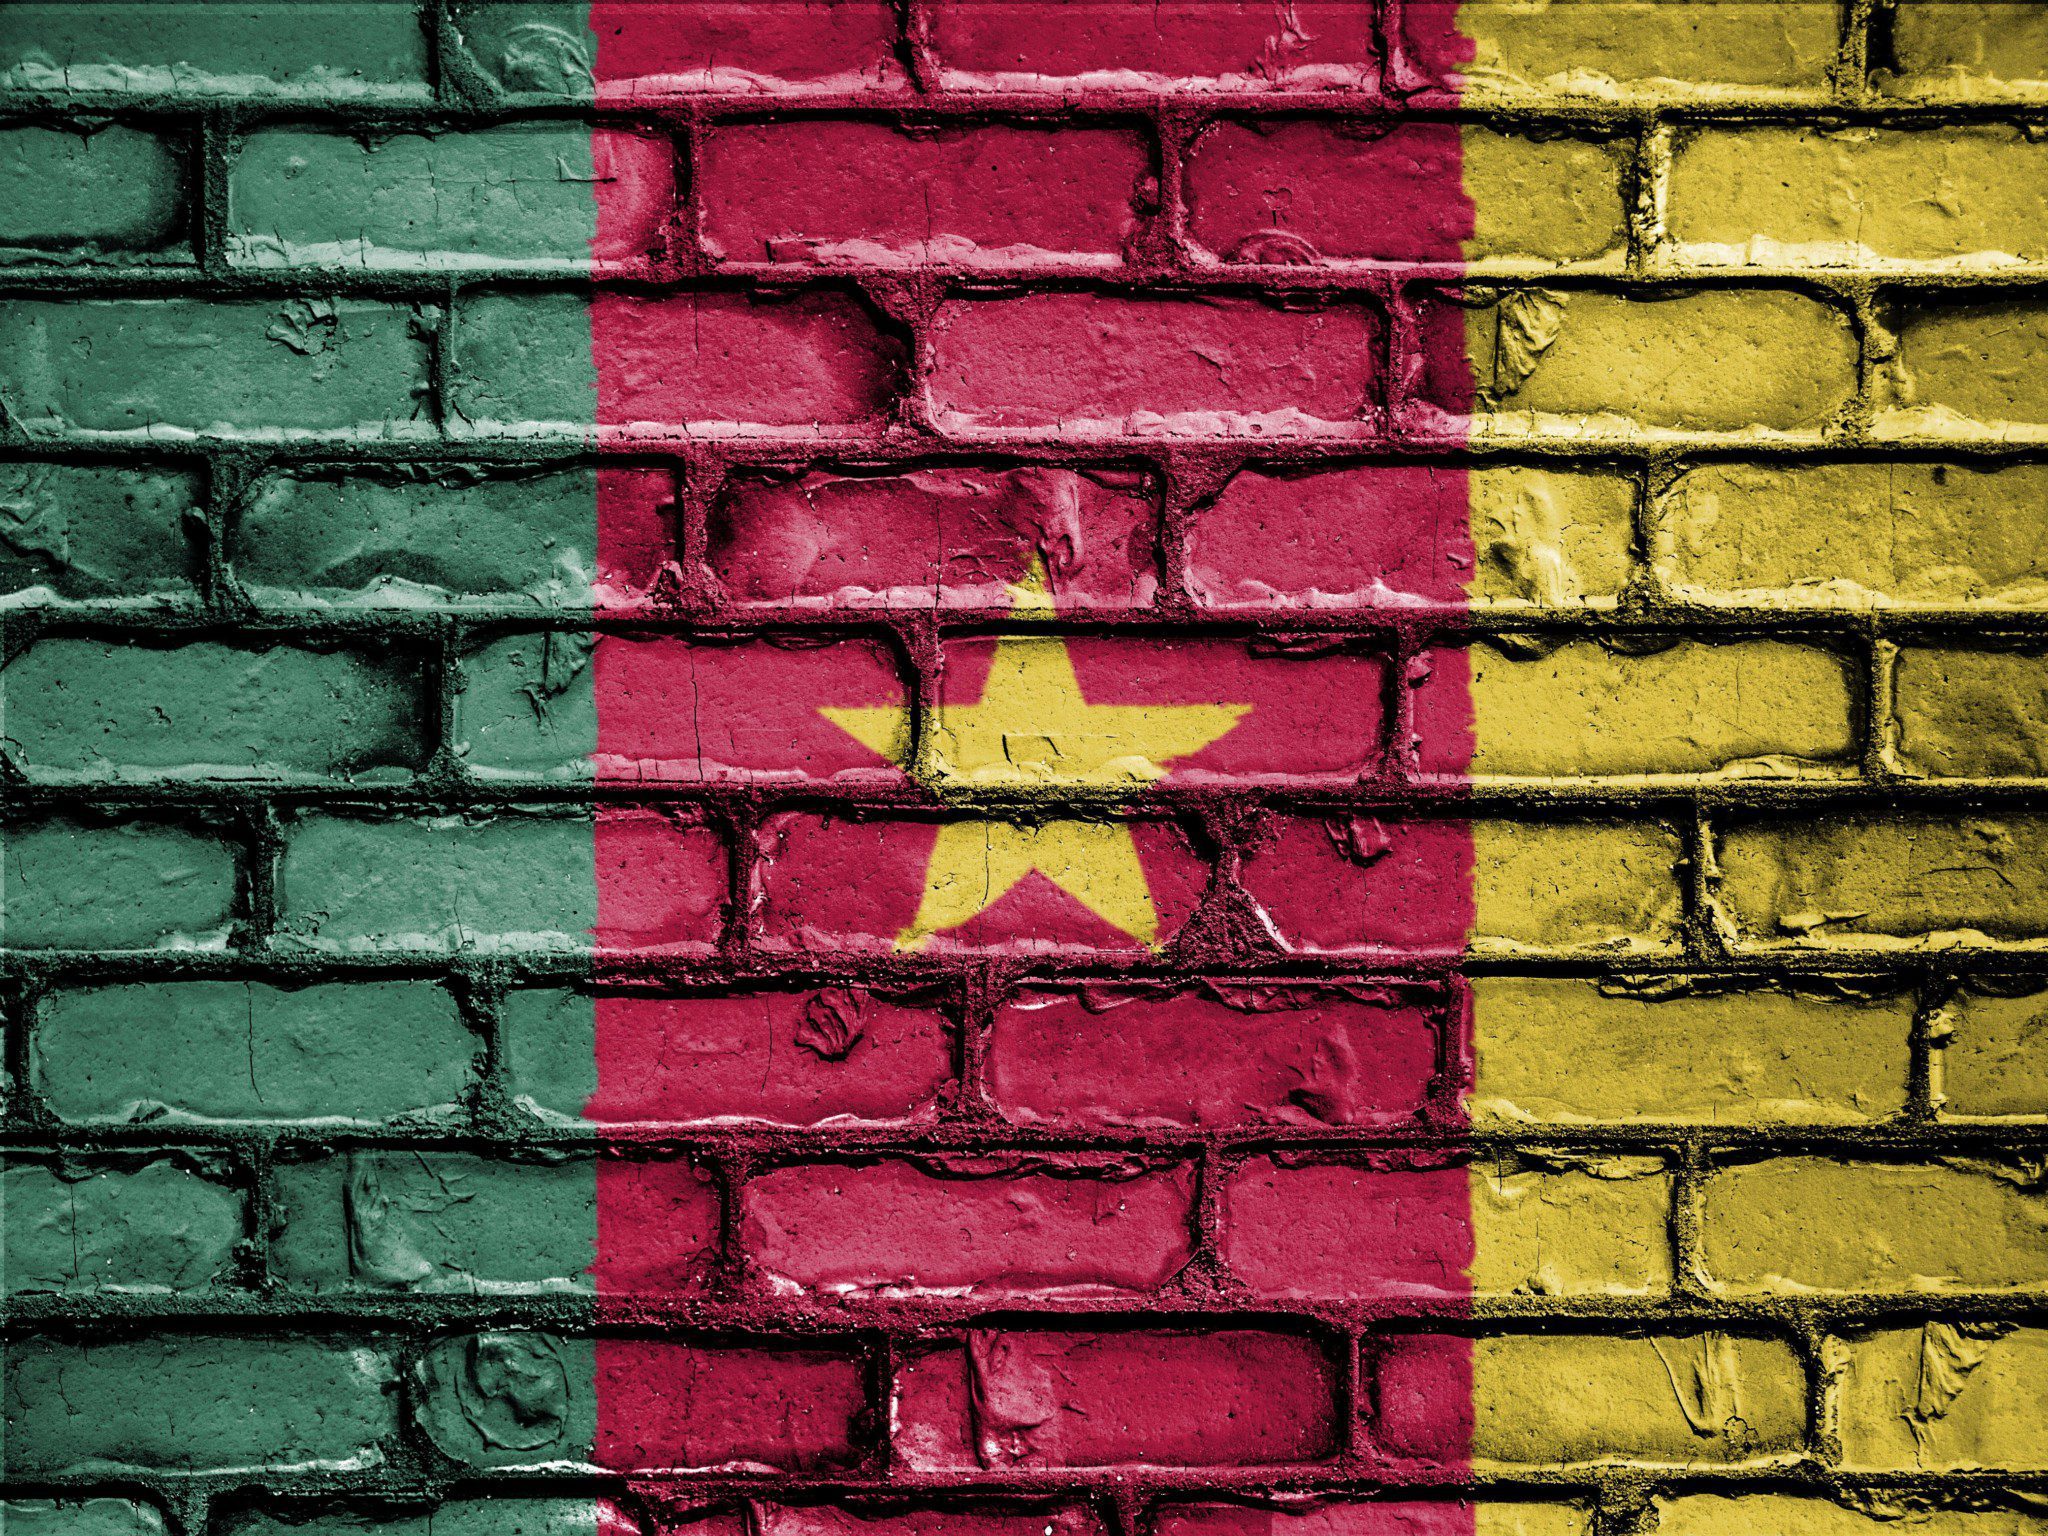 Camerun: Biya vince le elezioni, è il suo settimo mandato